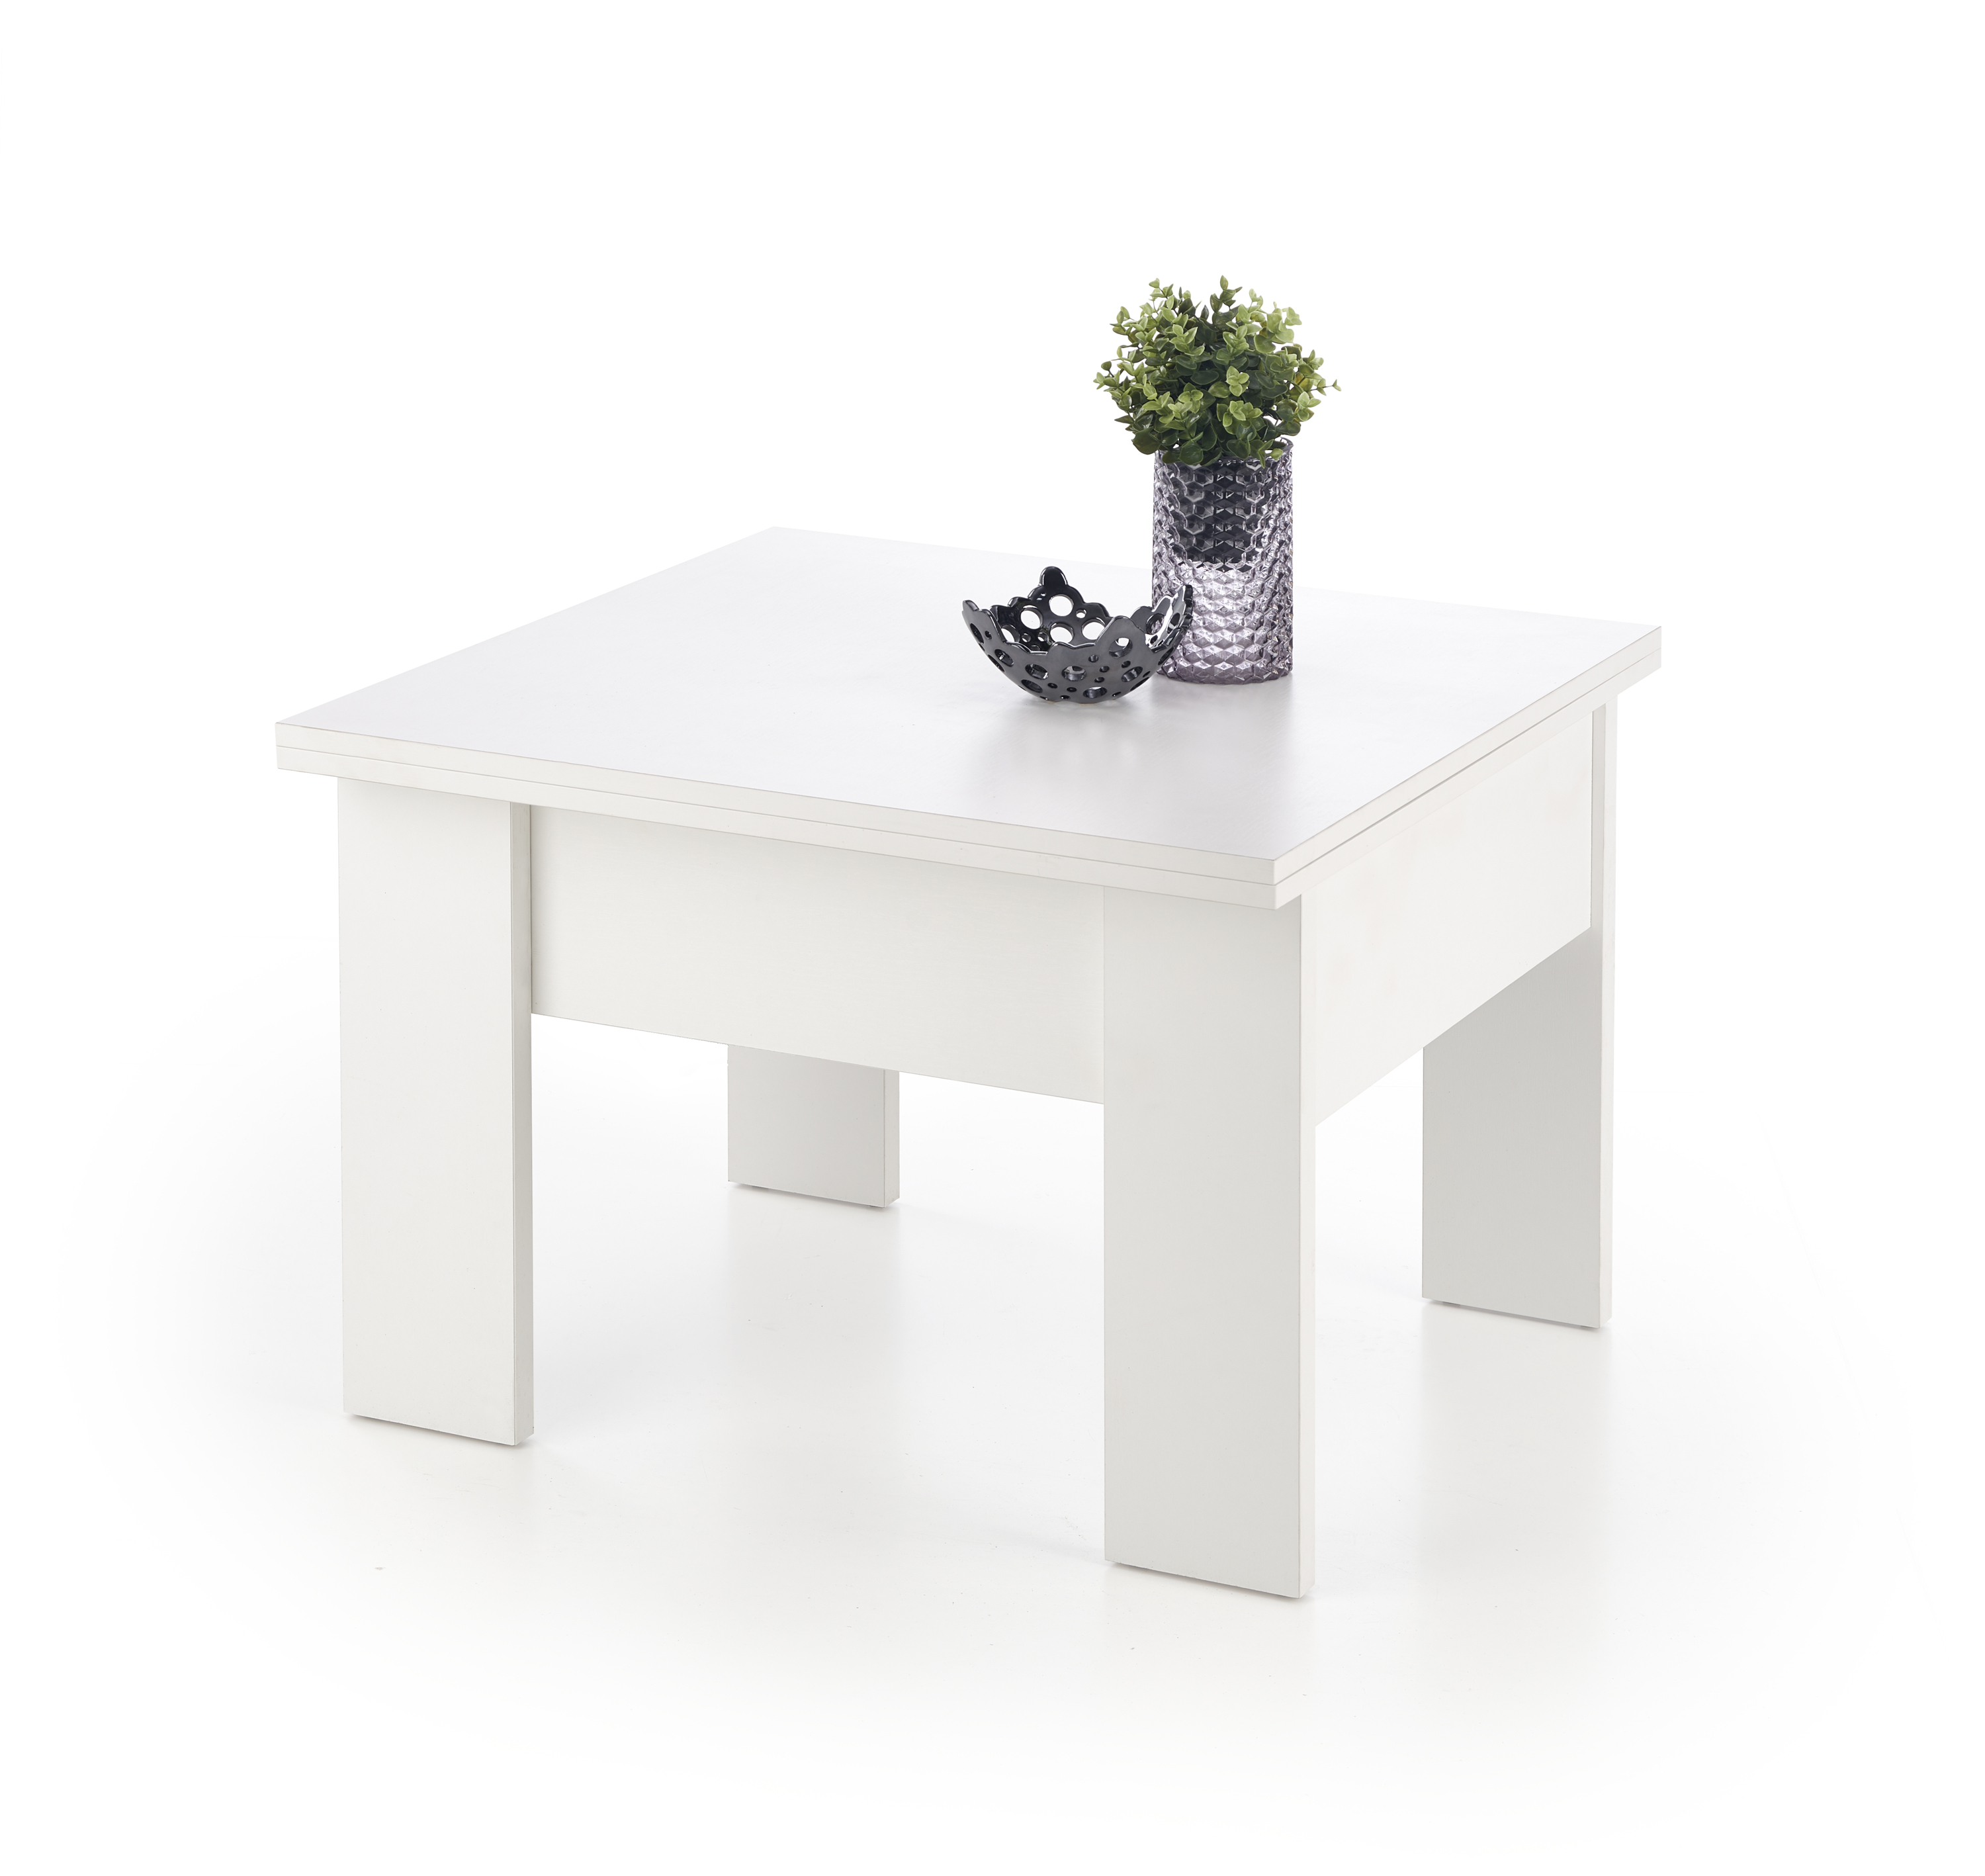 SERAFIN Rozkládací konferenční stolek Barva Bílá serafin Rozkládací konferenční stolek Barva Bílá